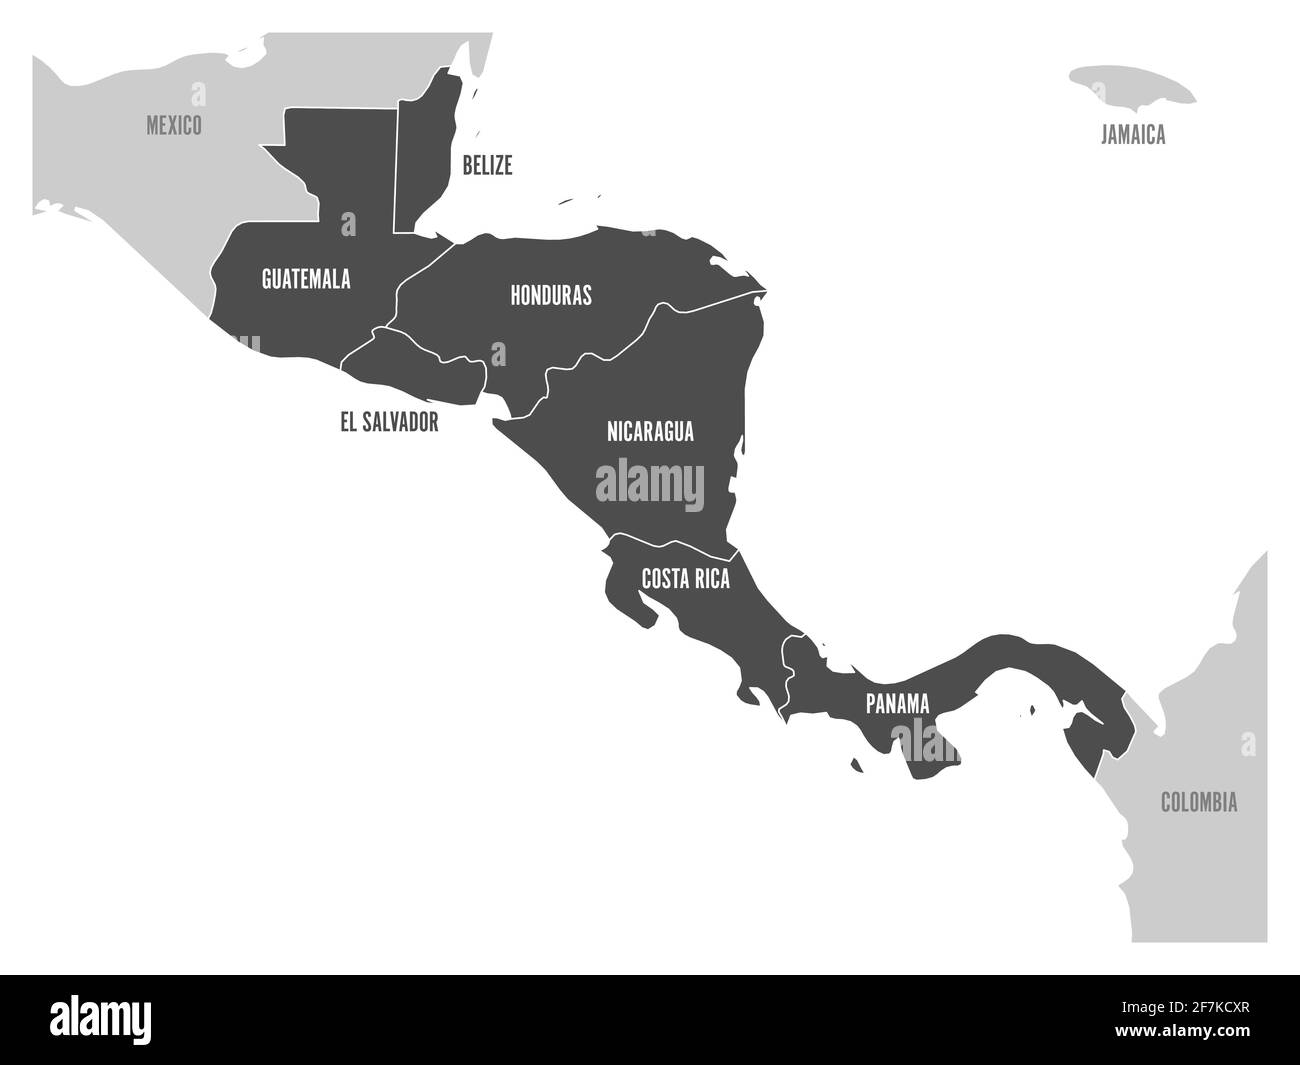 Carte de la région d'Amérique centrale avec États d'amérique centrale en gris foncé. Noms de pays. Illustration simple à vecteur plat Illustration de Vecteur